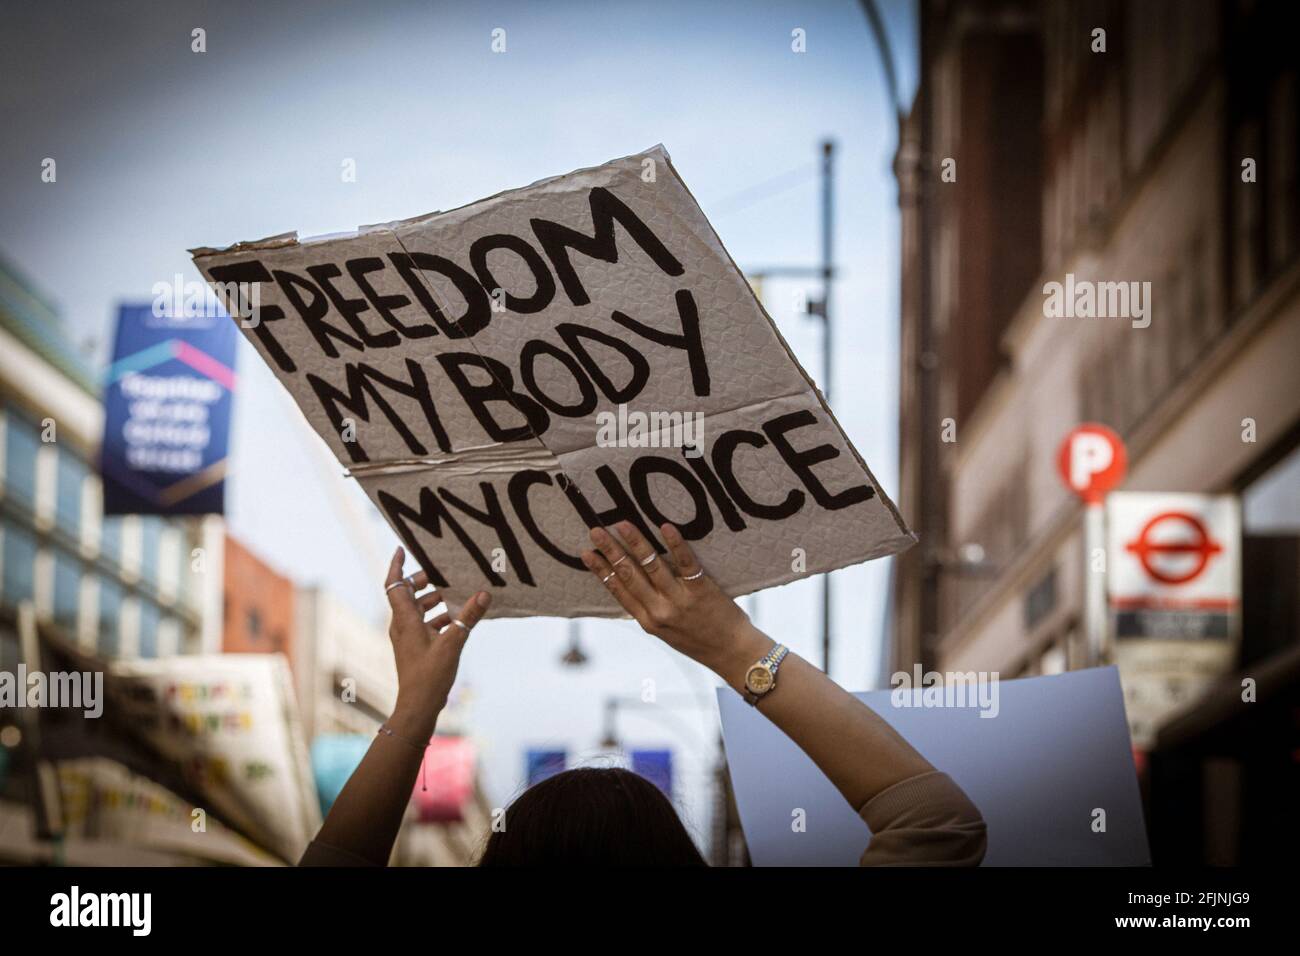 24 avril 2021, Londres, Angleterre, Royaume-Uni : une femme tient un panneau « Freedom My Body My Choice » lors d’une manifestation anti-verrouillage. Banque D'Images